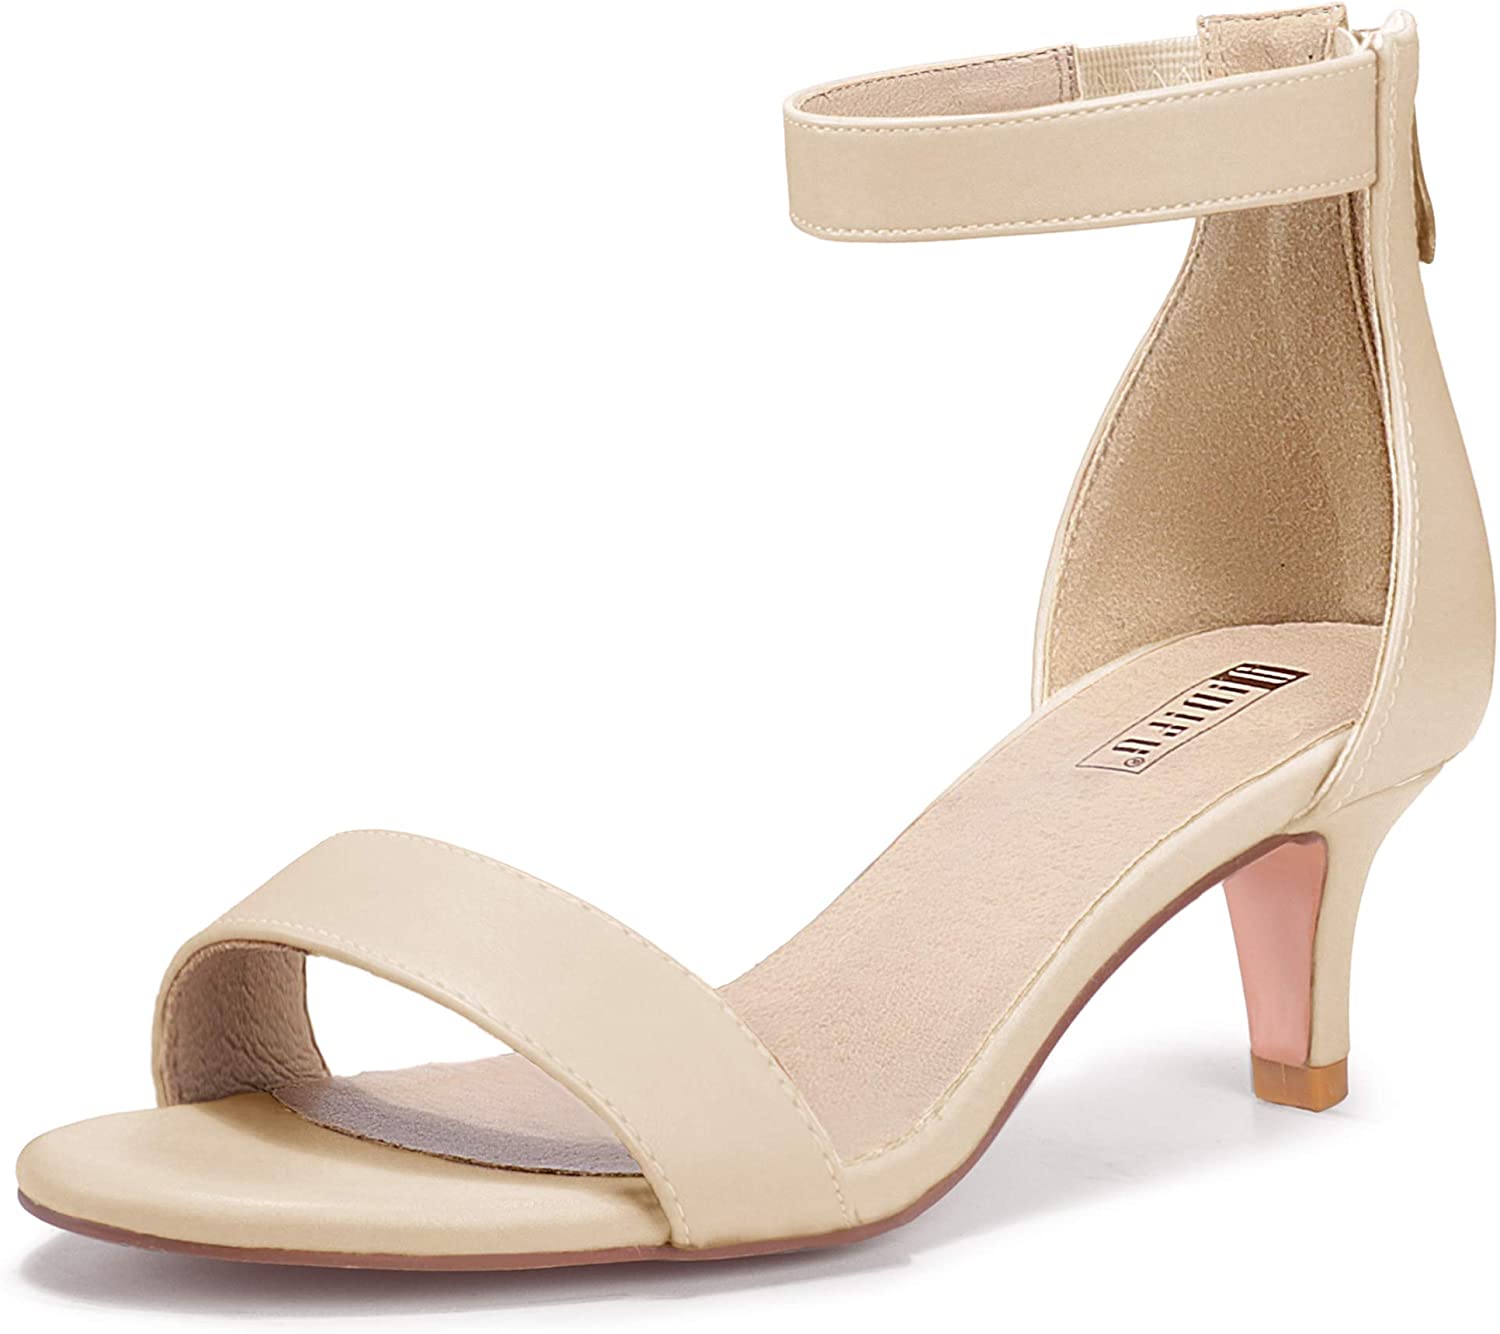 IDIFU Women's Low Kitten Heels Sandals Ankle Strap Open Toe Wedding Pump Shoes with Zipper 